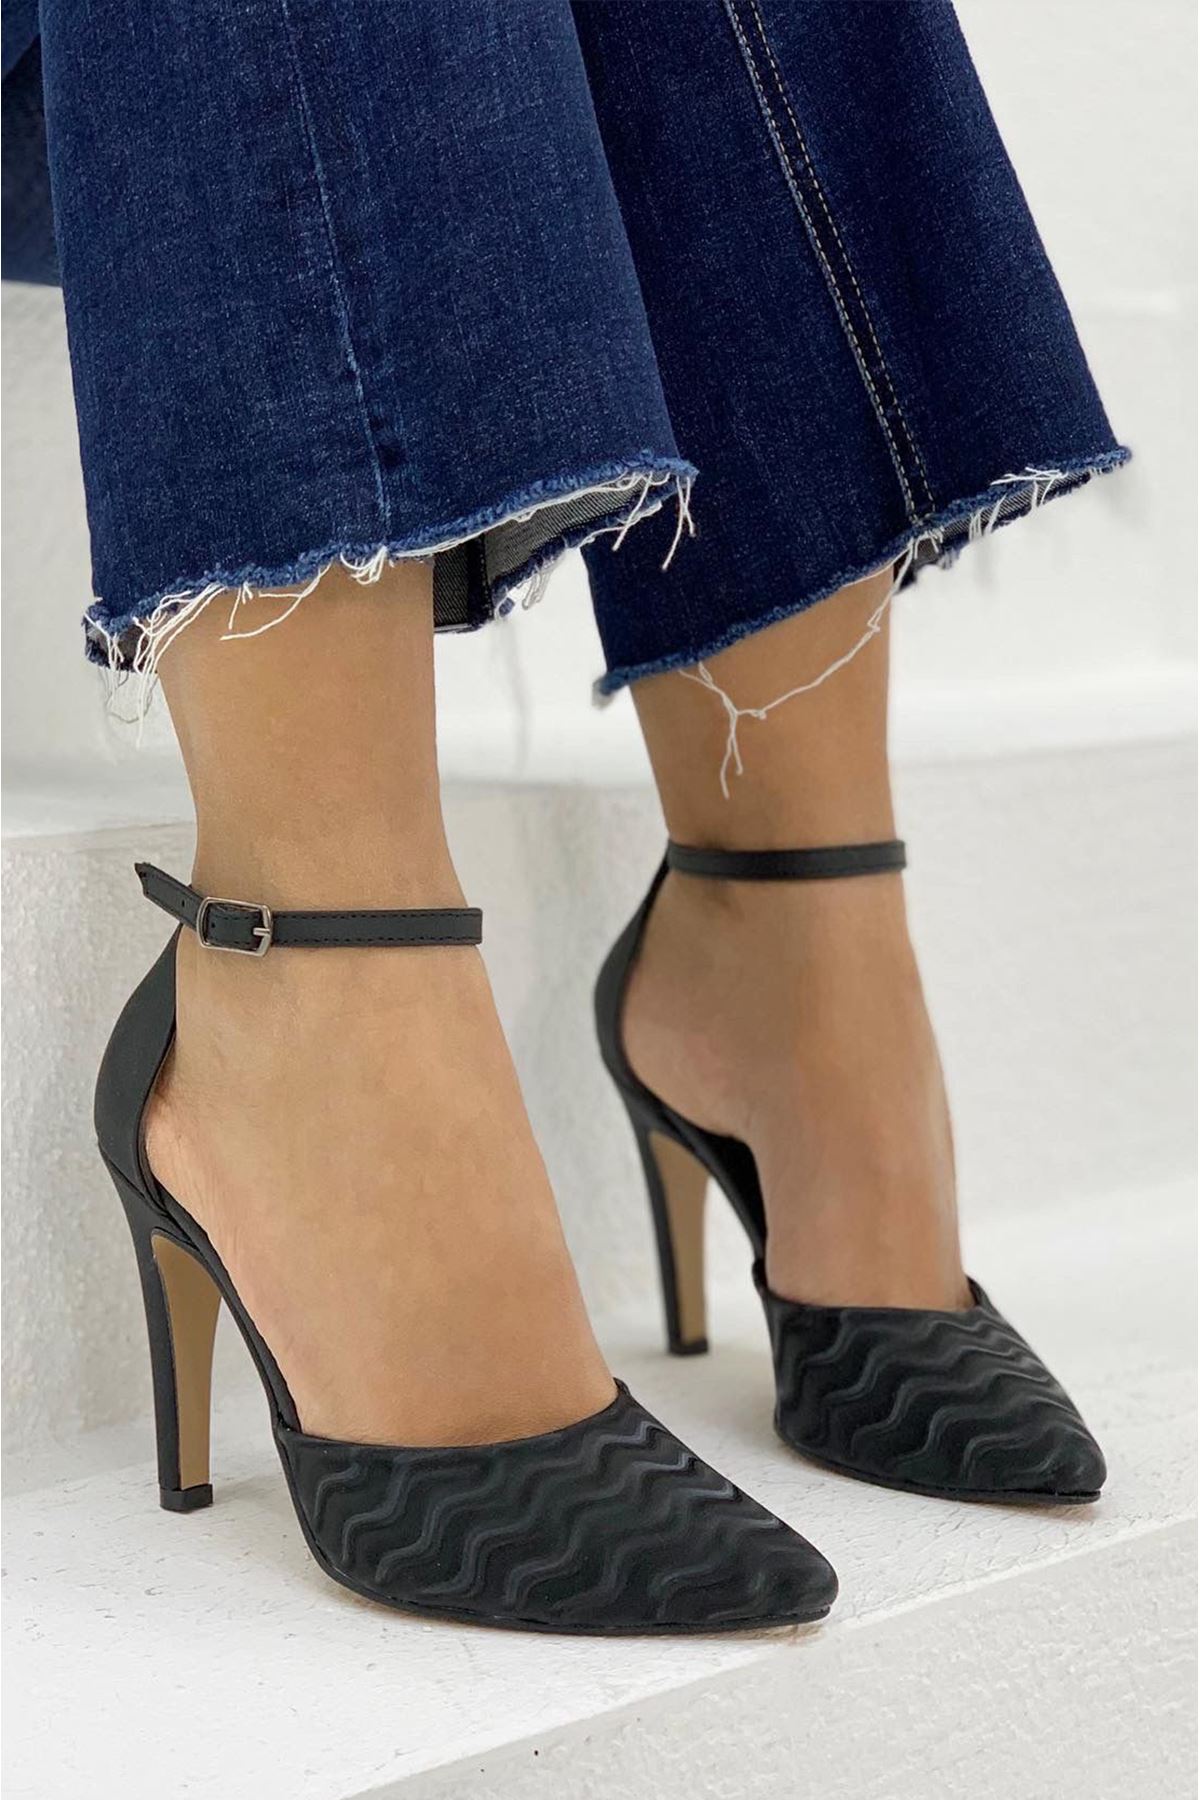 Chanell Siyah Bayan Topuklu Ayakkabı